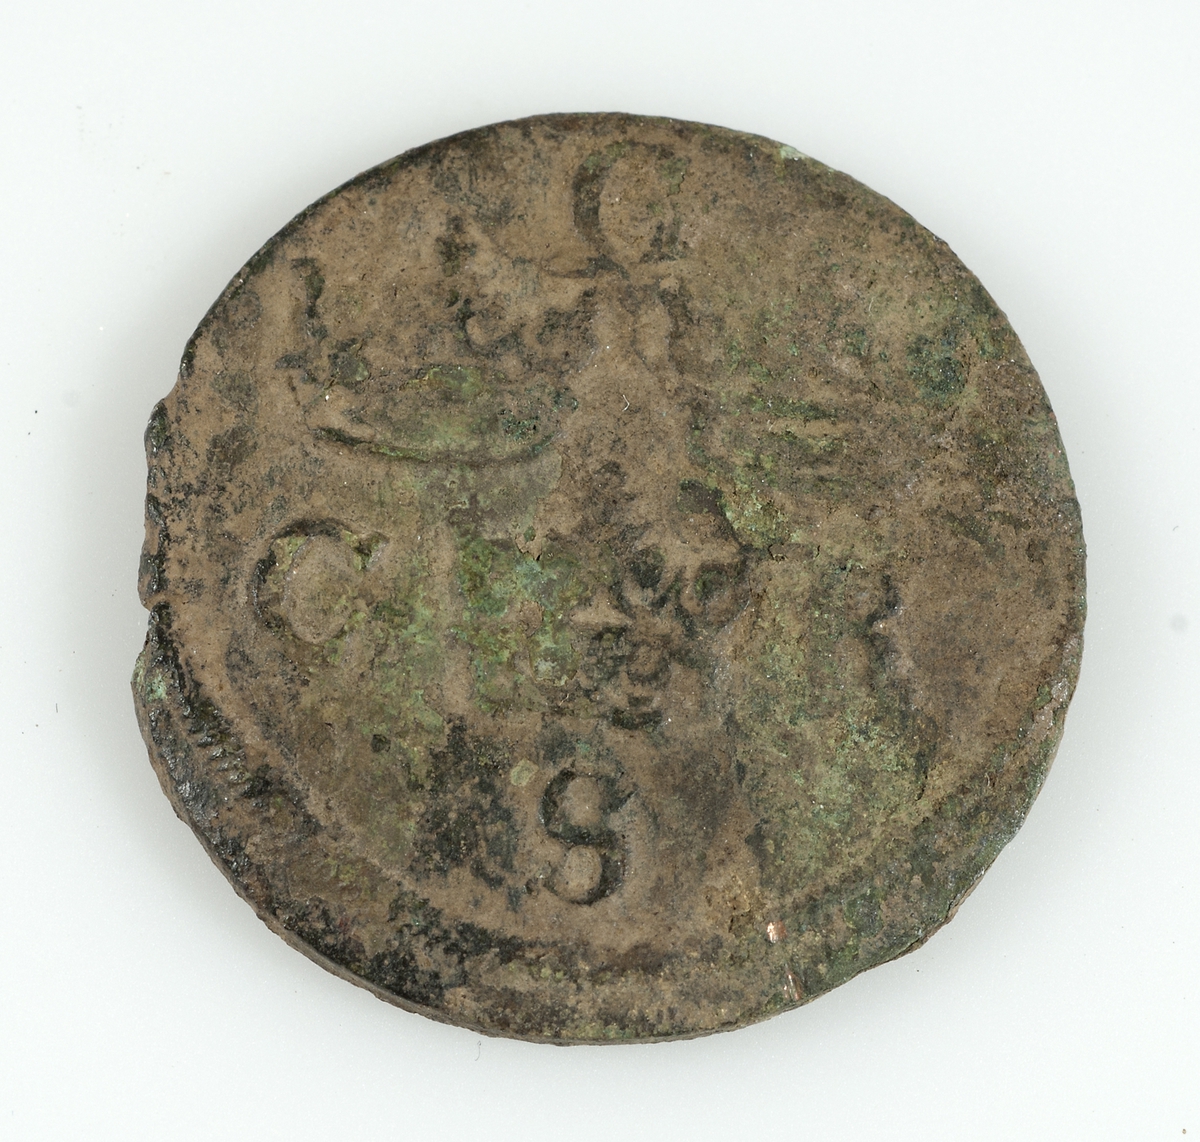 Mynt av koppar 1/4 öre. Präglat 1656 av Karl X Gustav, troligen i Alvesta. Krönt lejon på ena sidan samt årtalet 1656, 1/4 öre, på andra sidan tre kronor samt bokstäverna G, C, R, S.